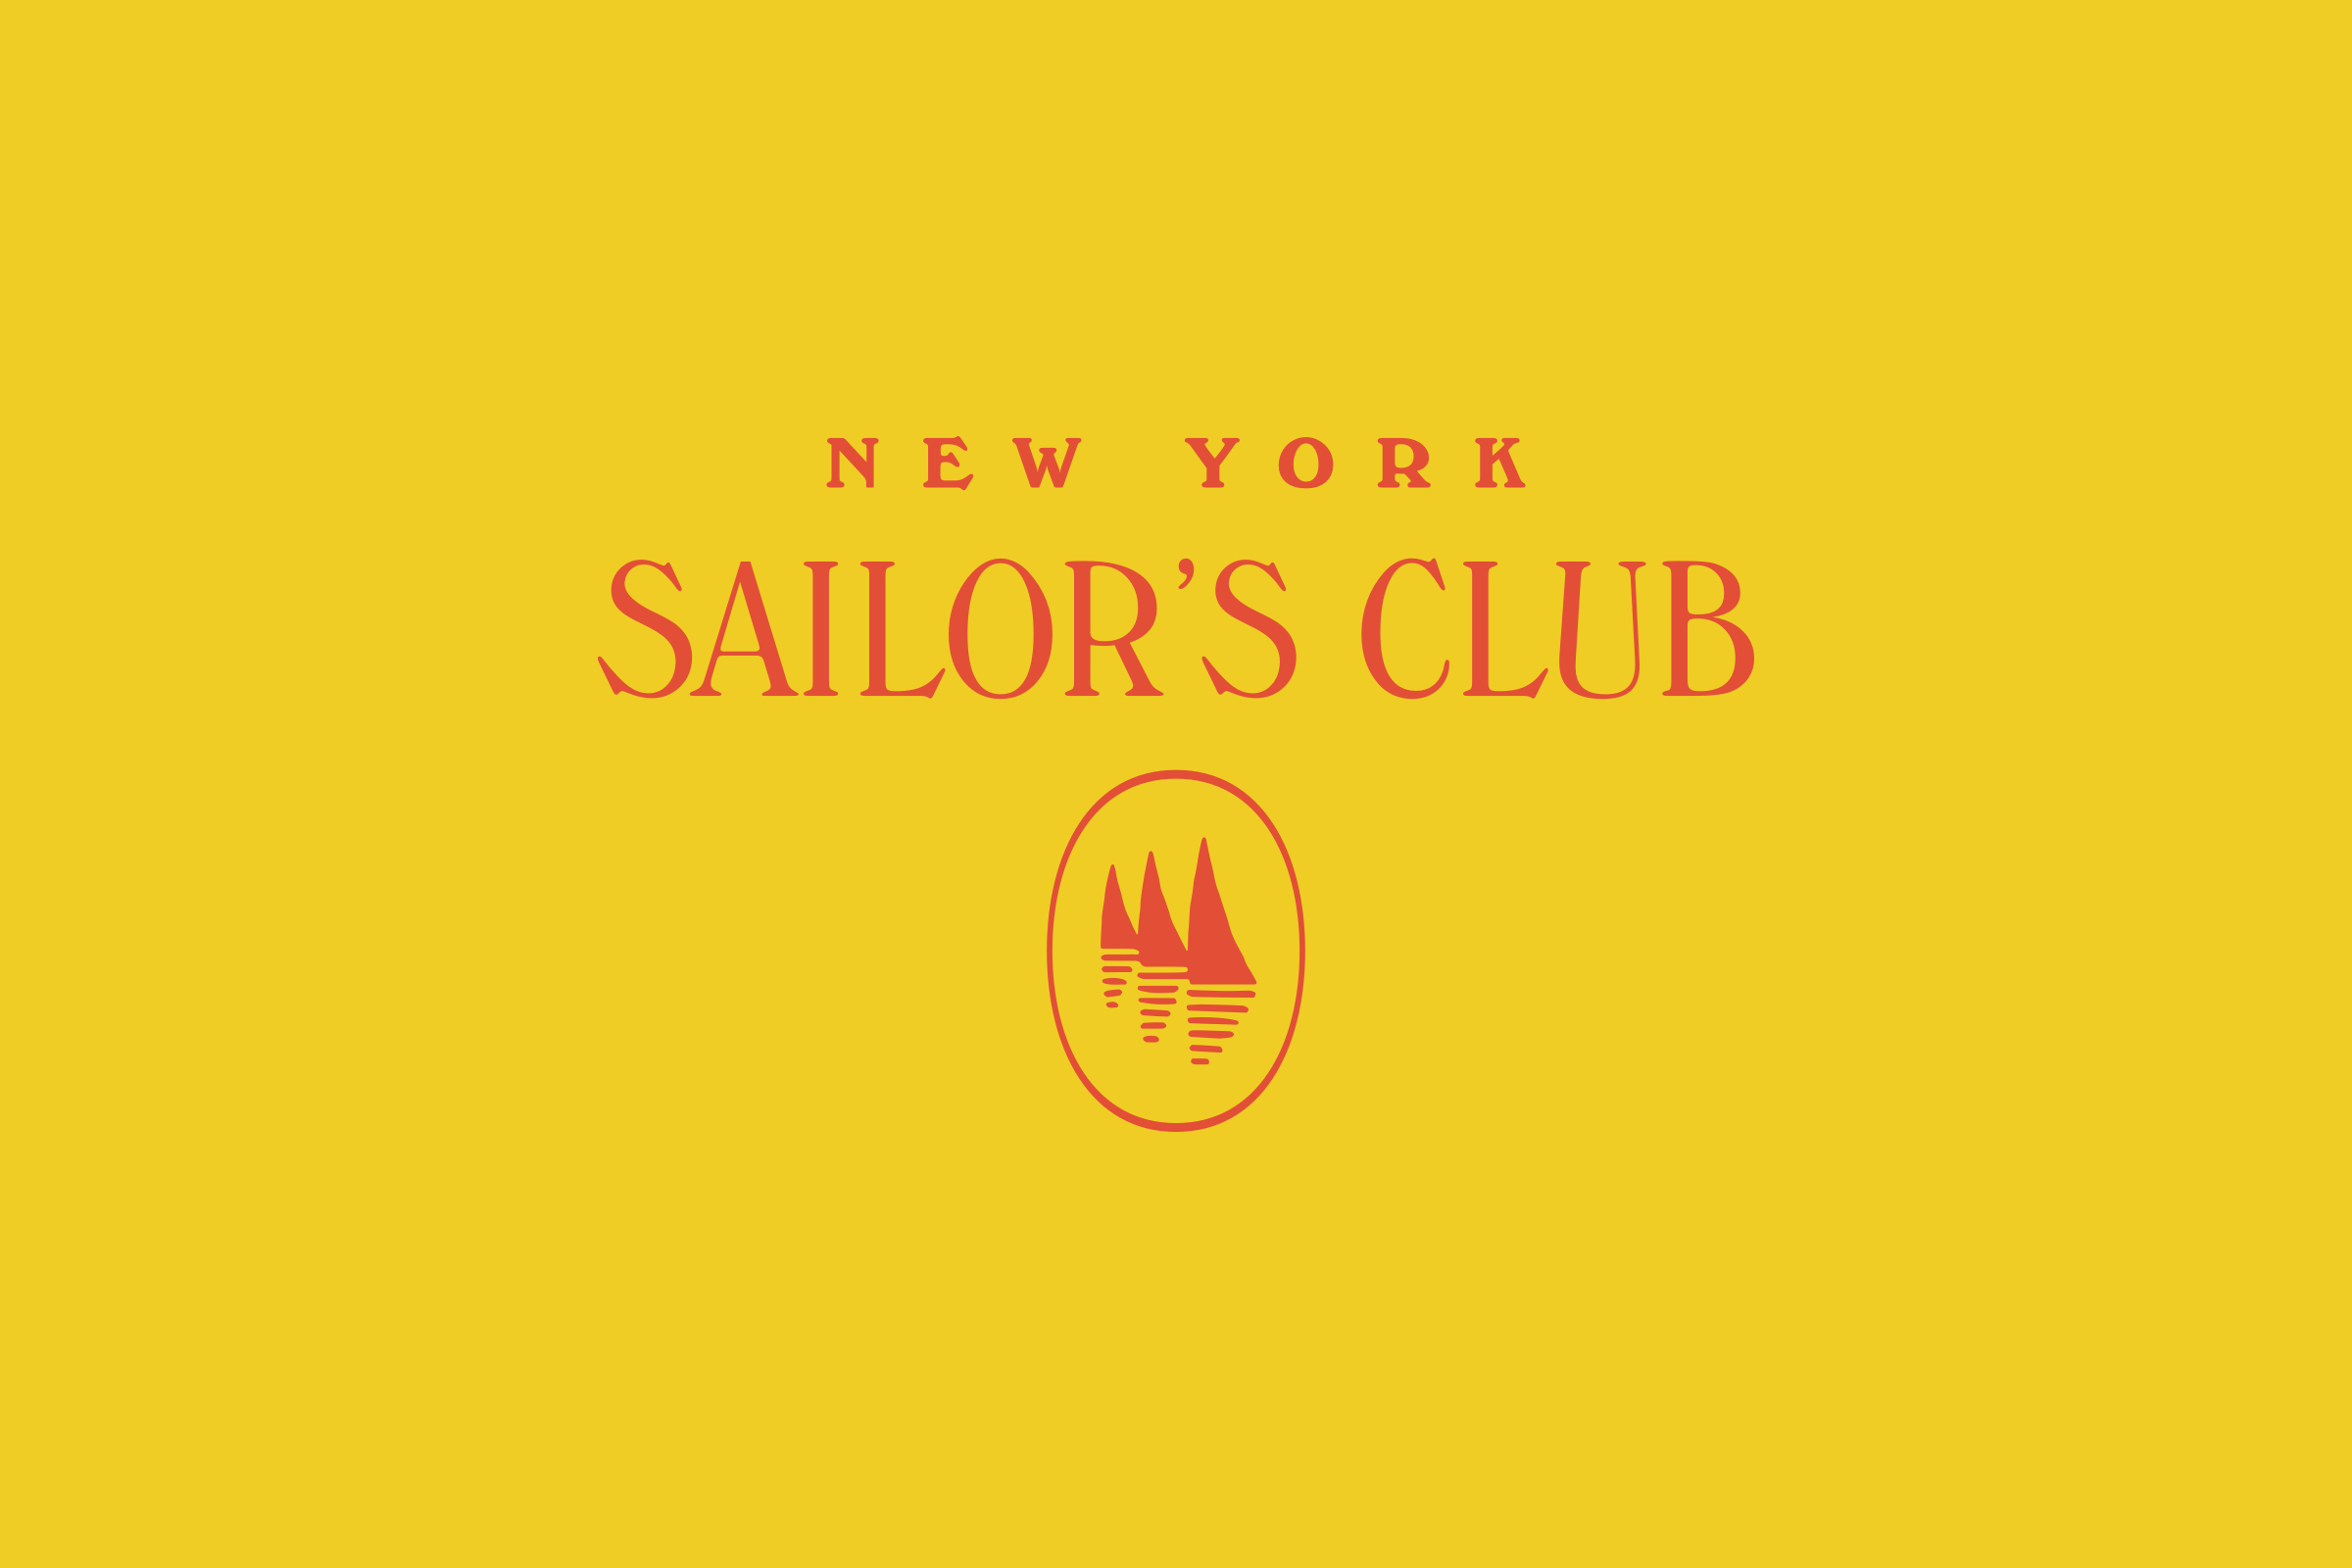 The Sailor's Club, New York City